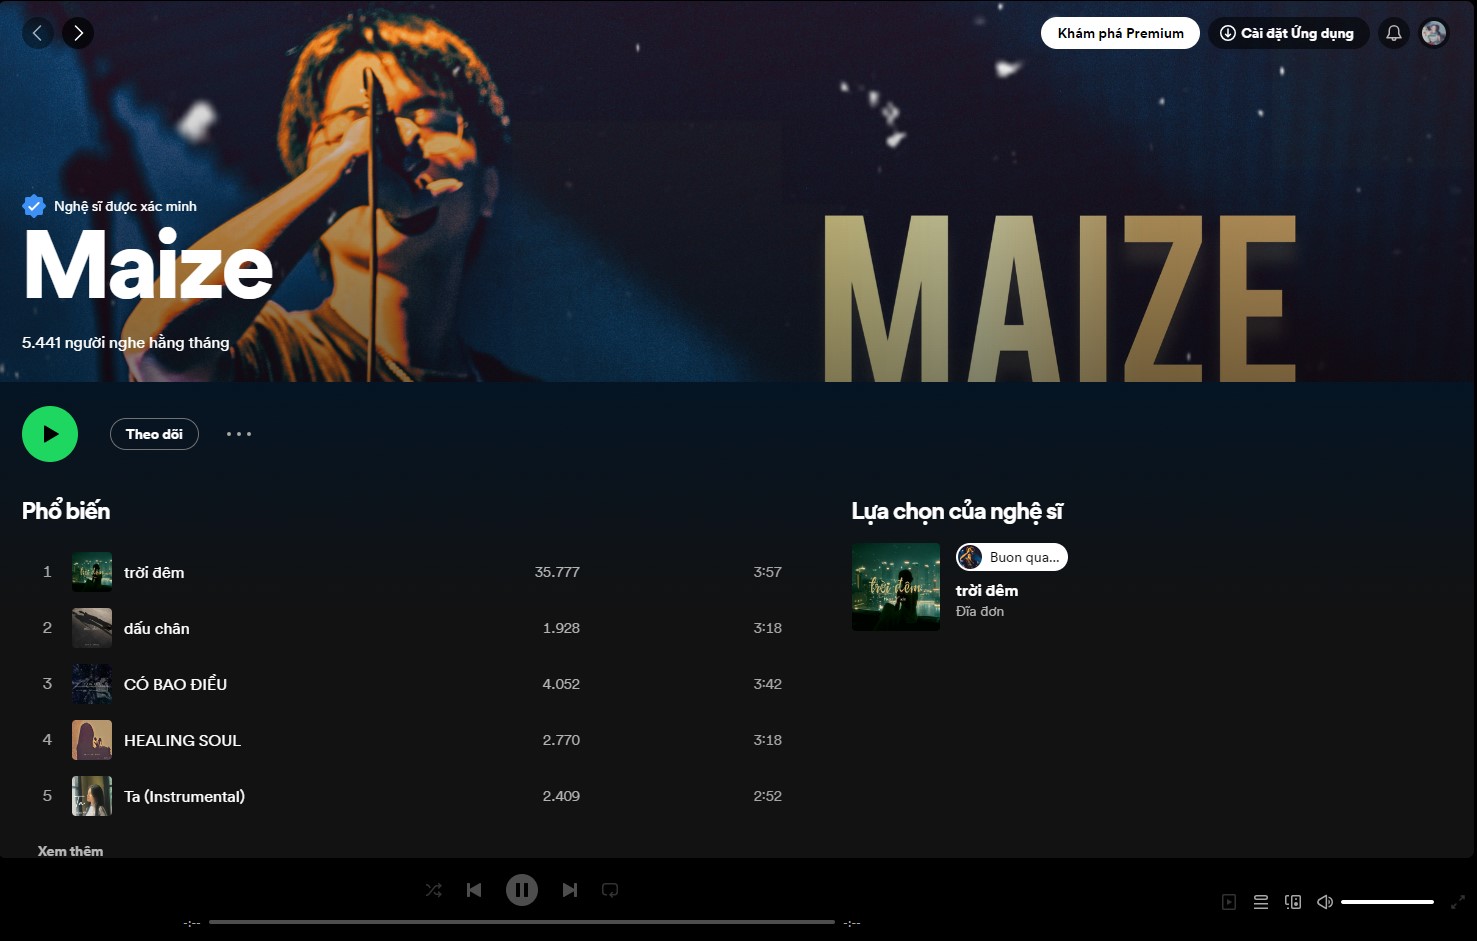 Maize's Spotify